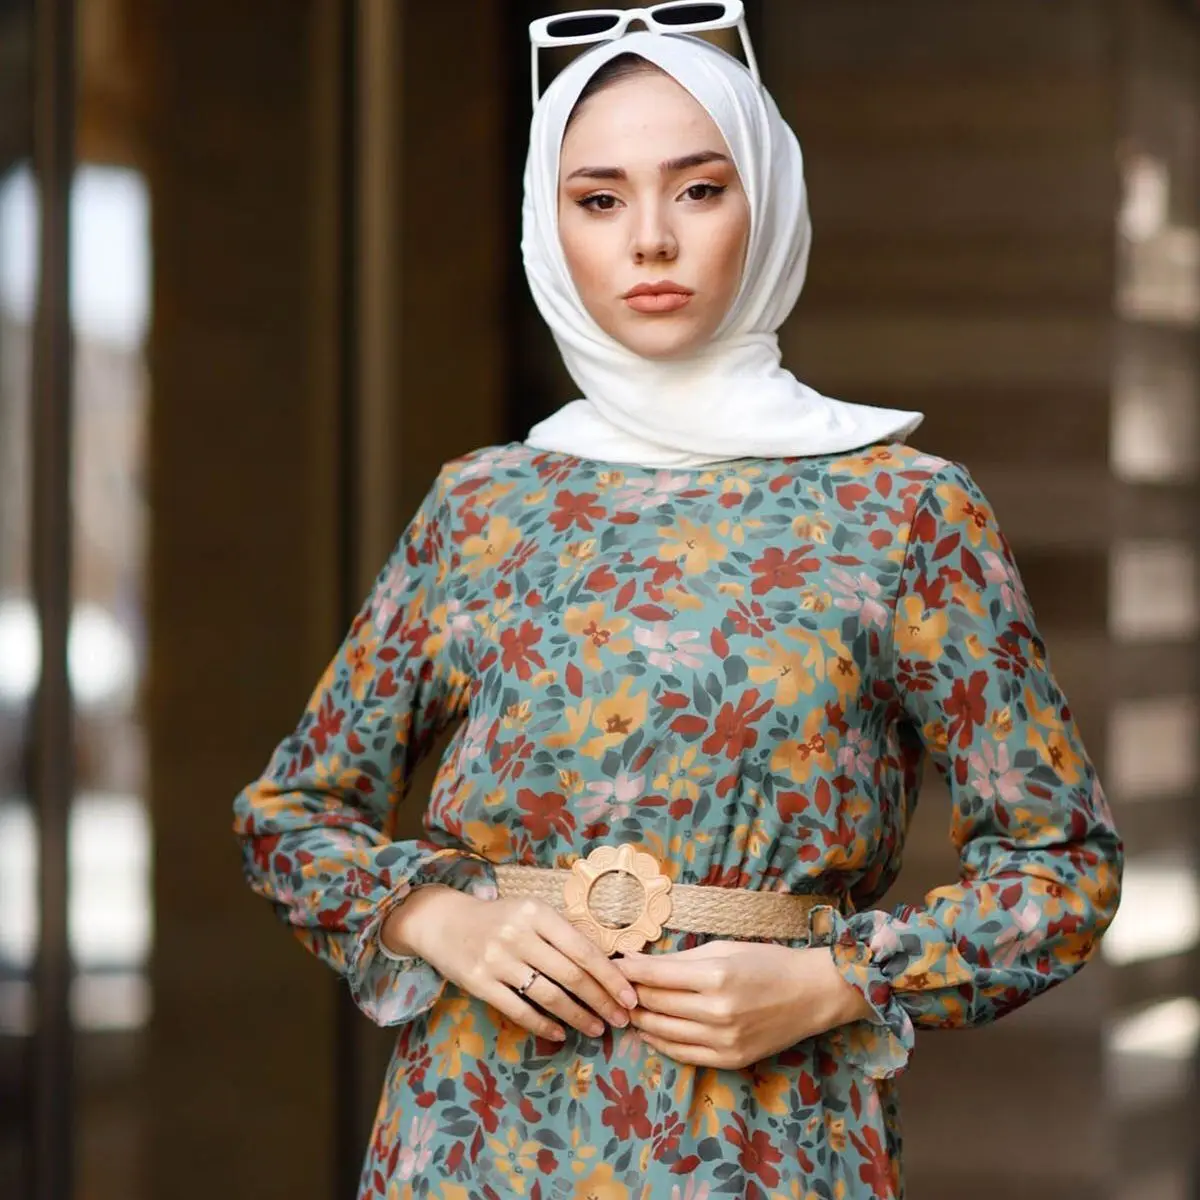 Шифоновое платье с принтом листьев, индейка, мусульманская мода, хиджаб, мусульманская одежда, Дубай, эксстанбустили, амбул 2021